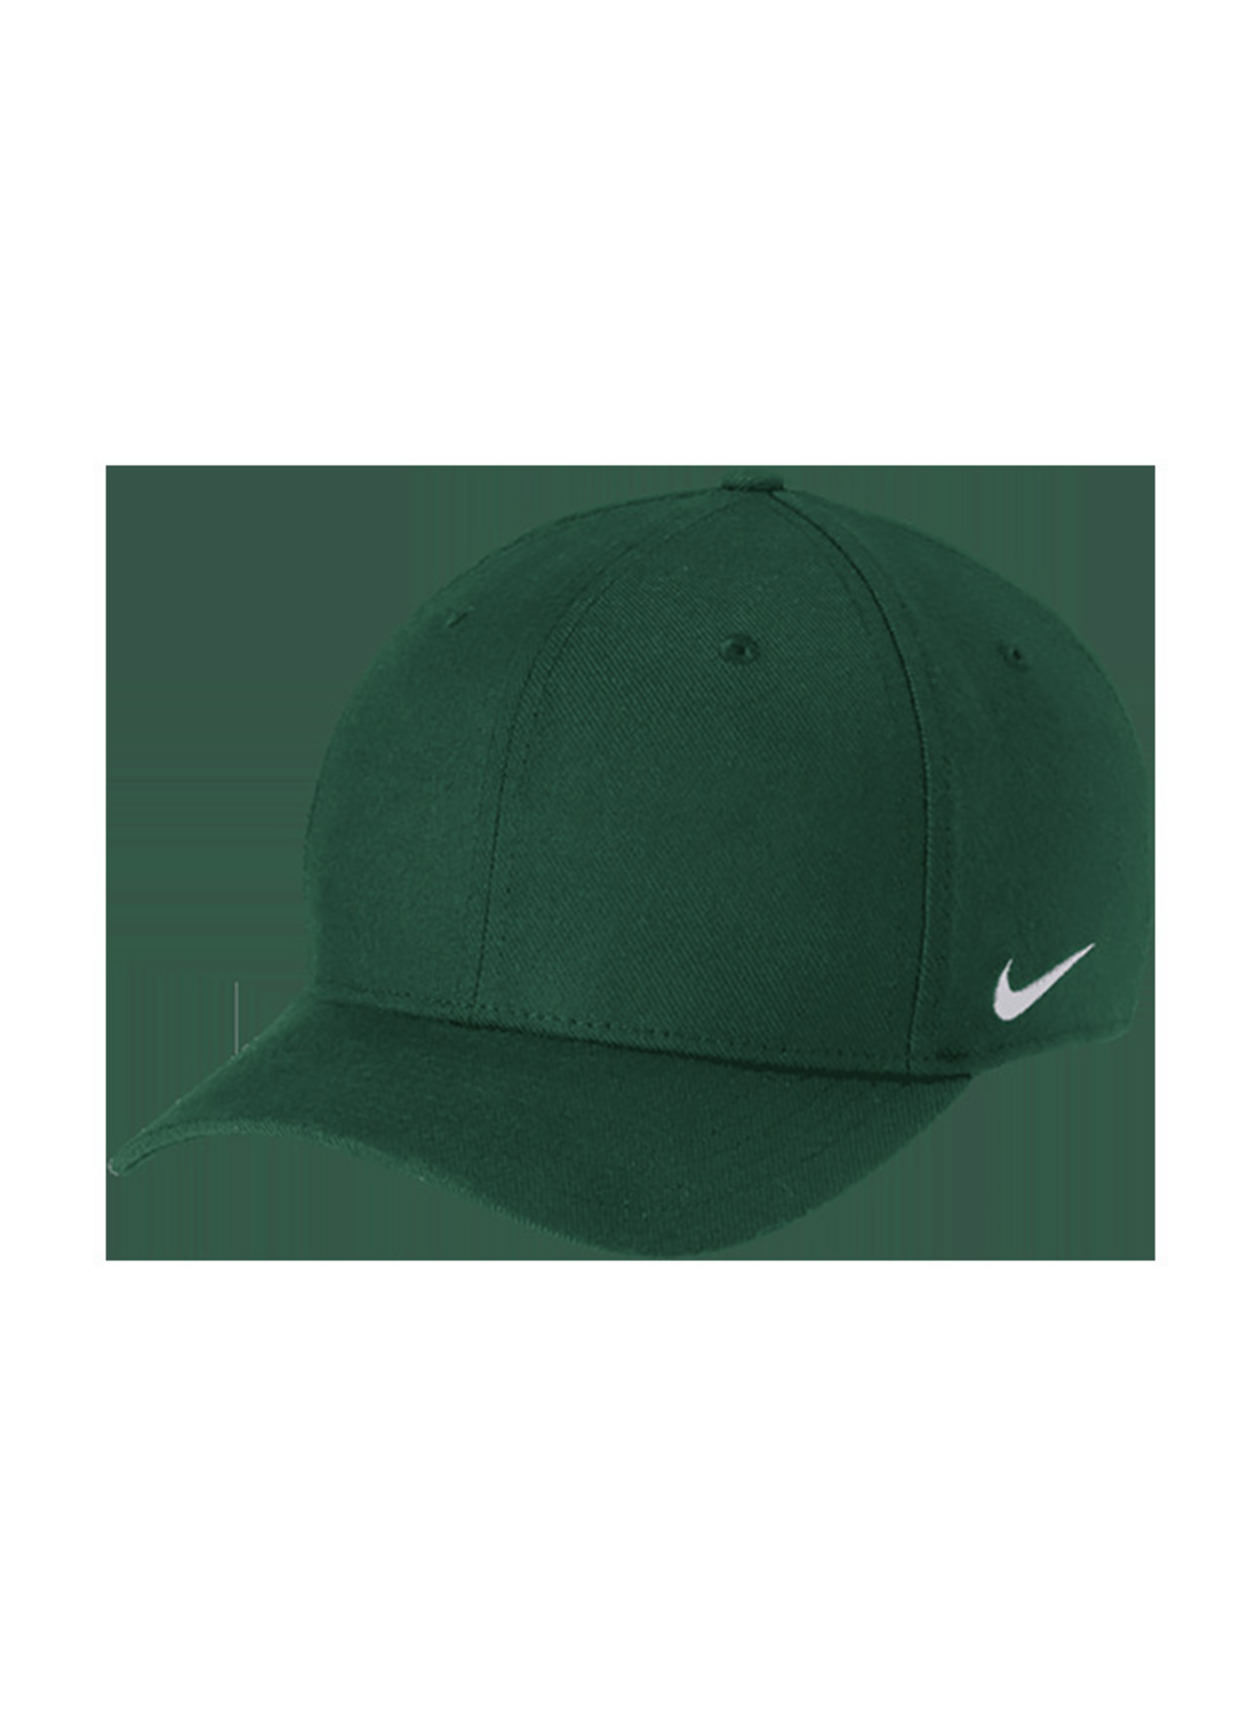 Nike Gorge Green Team Dri-FIT Swoosh Flex Hat